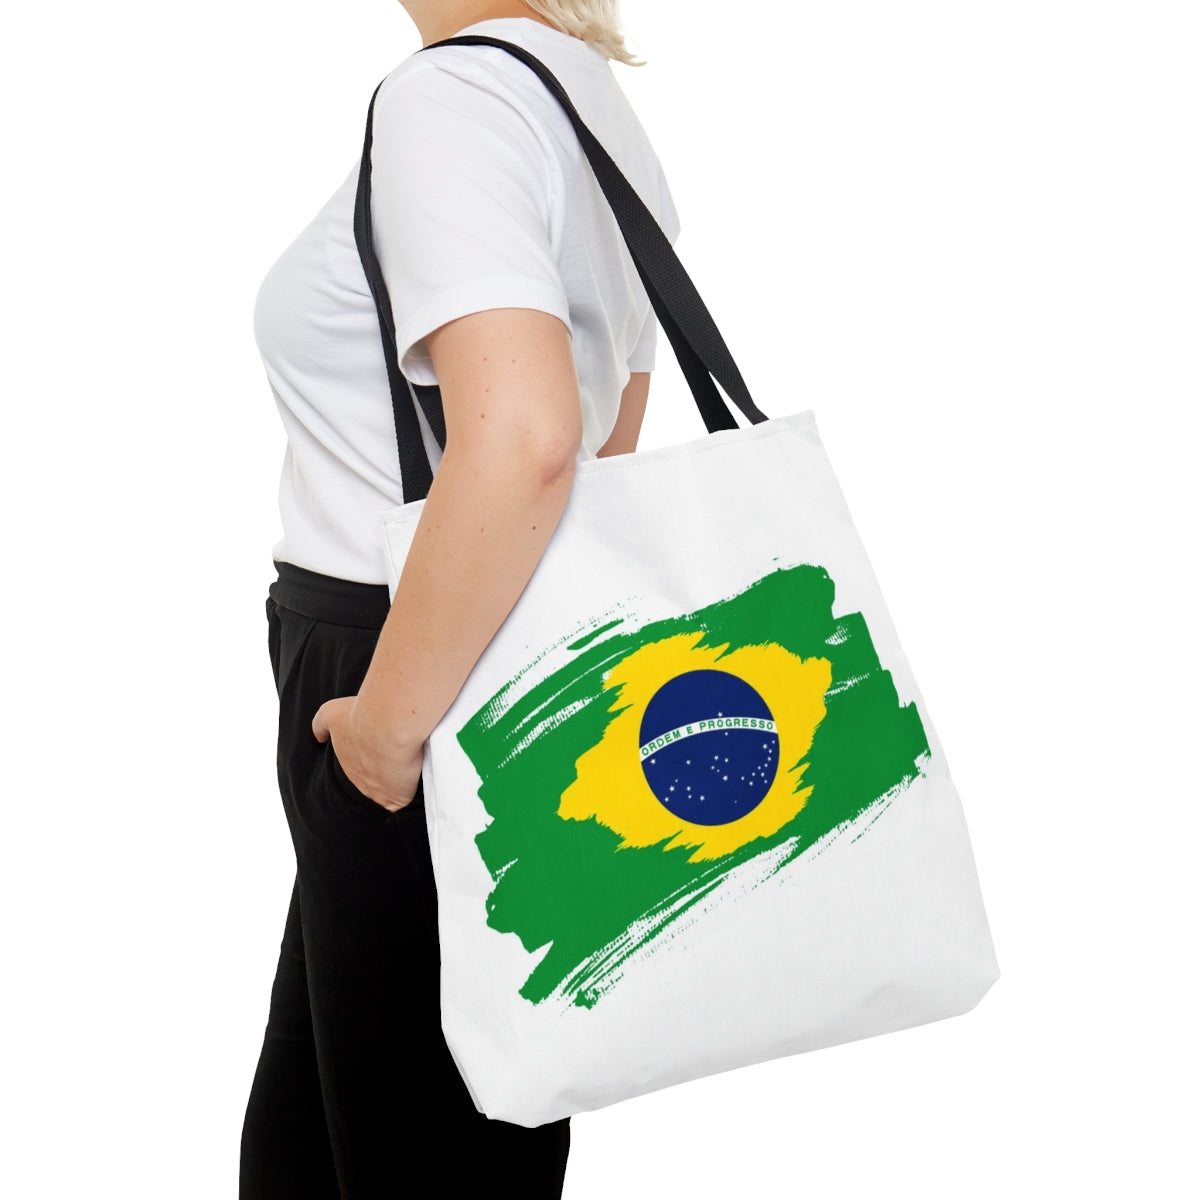 White Tote Bag featuring vibrant Brazilian flag print - stylish accessory celebrating Brazilian pride and culture.